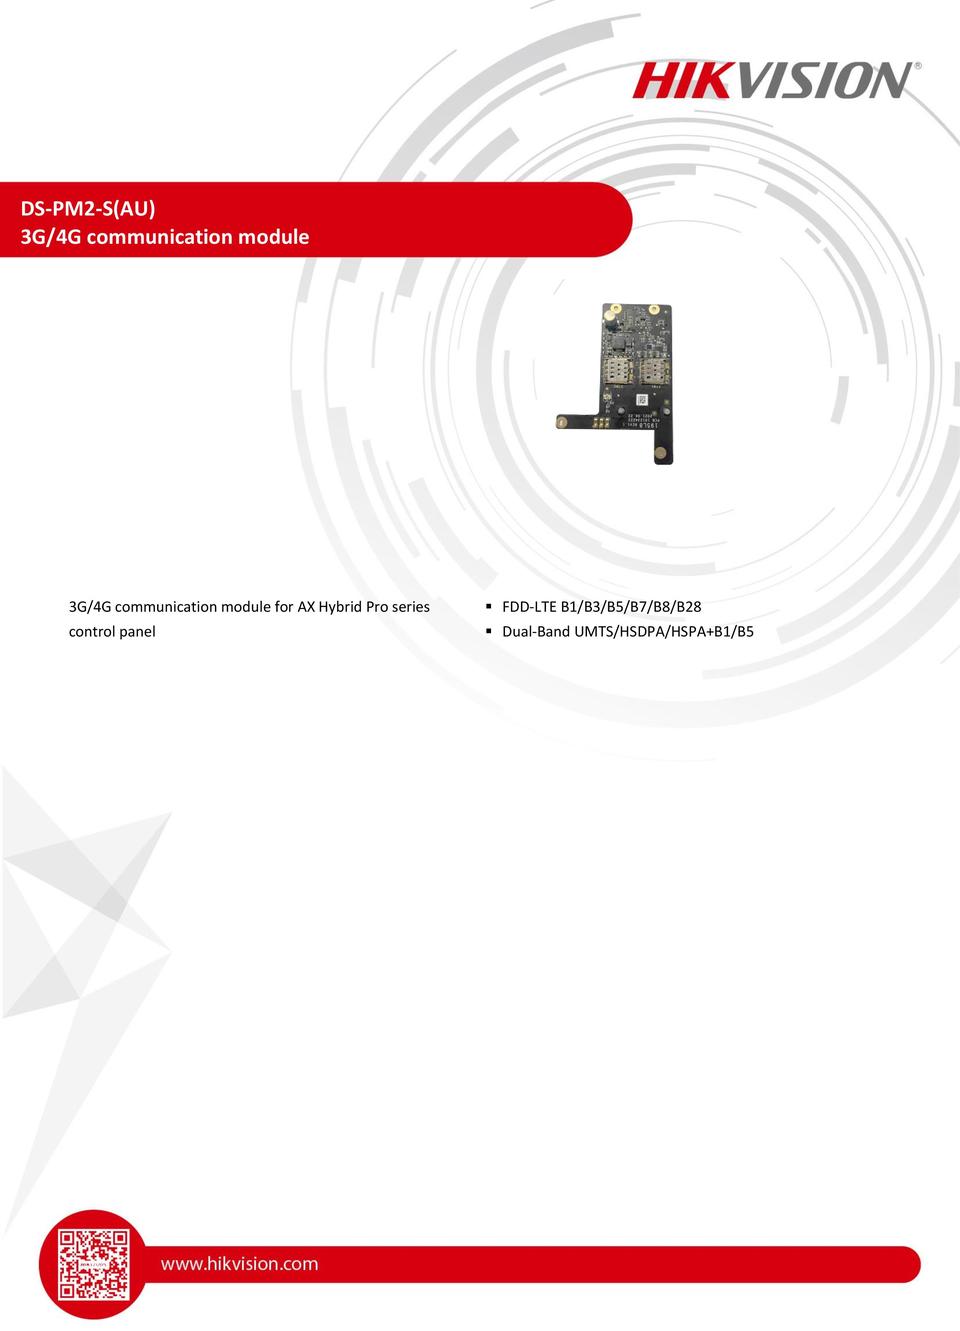 Hikvision DS-PM2-S(AU) 4G Communication Module 0